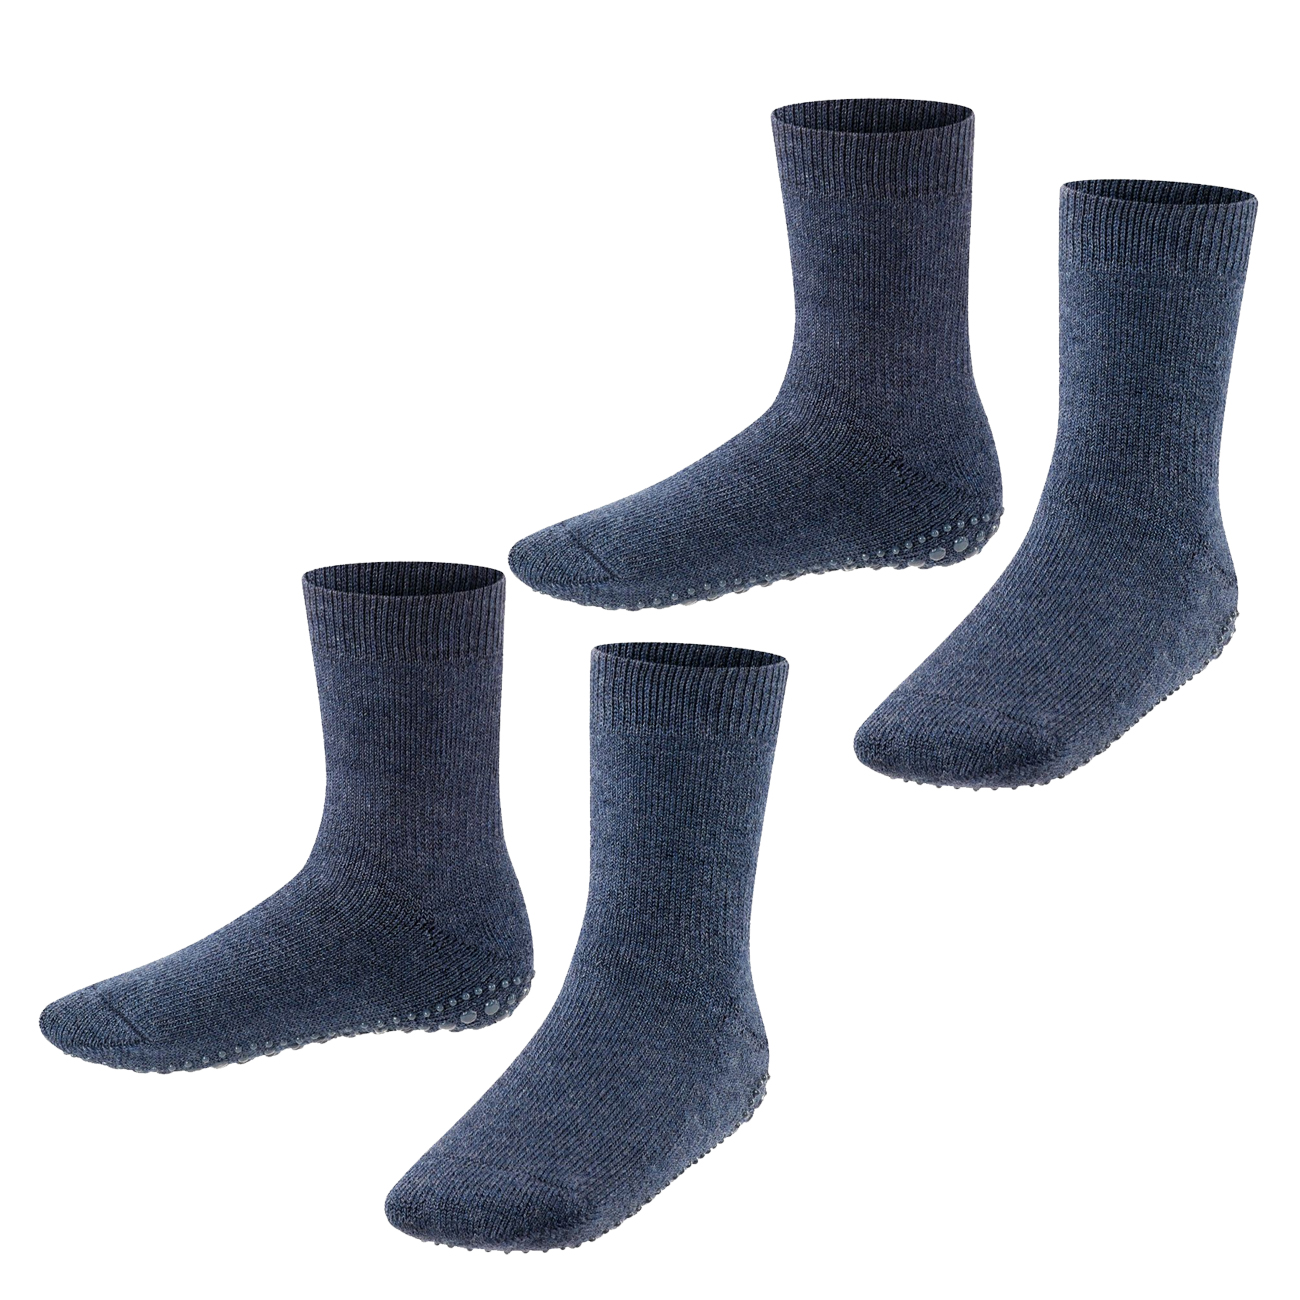 Falke Kinder Socken Catspads 2er 3er 4er Multipack Hersteller: Falke Bestellnummer:4063499024779